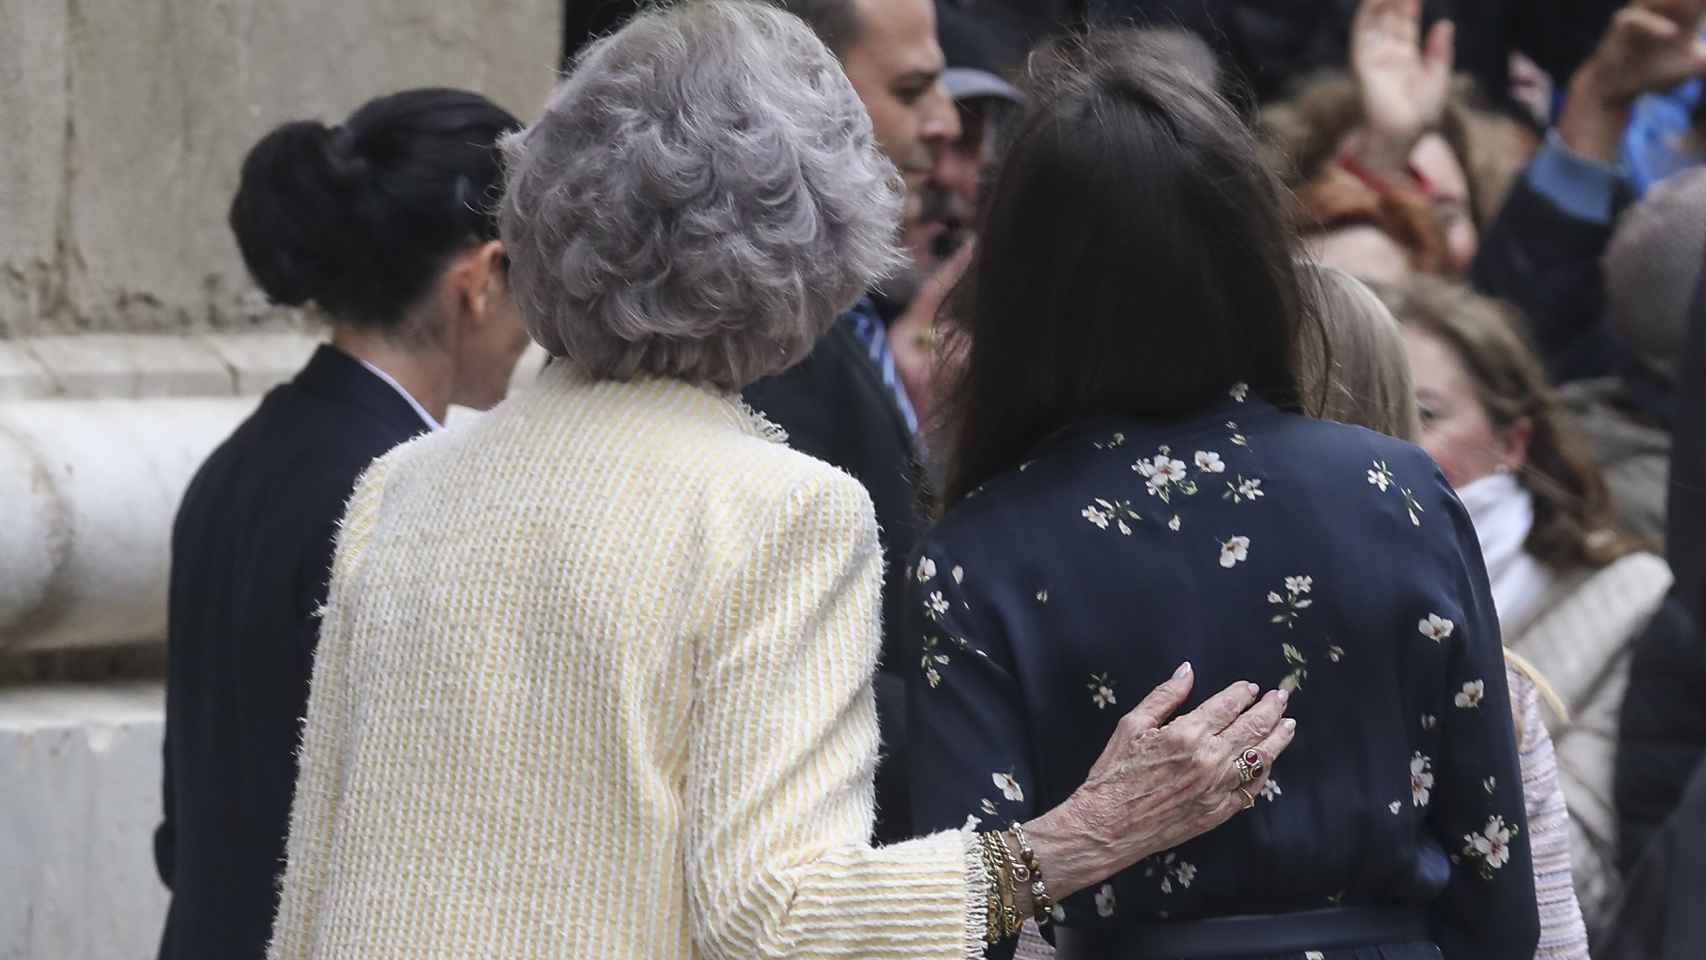 La reina Sofía regalando una caricia a su nuera Letizia.